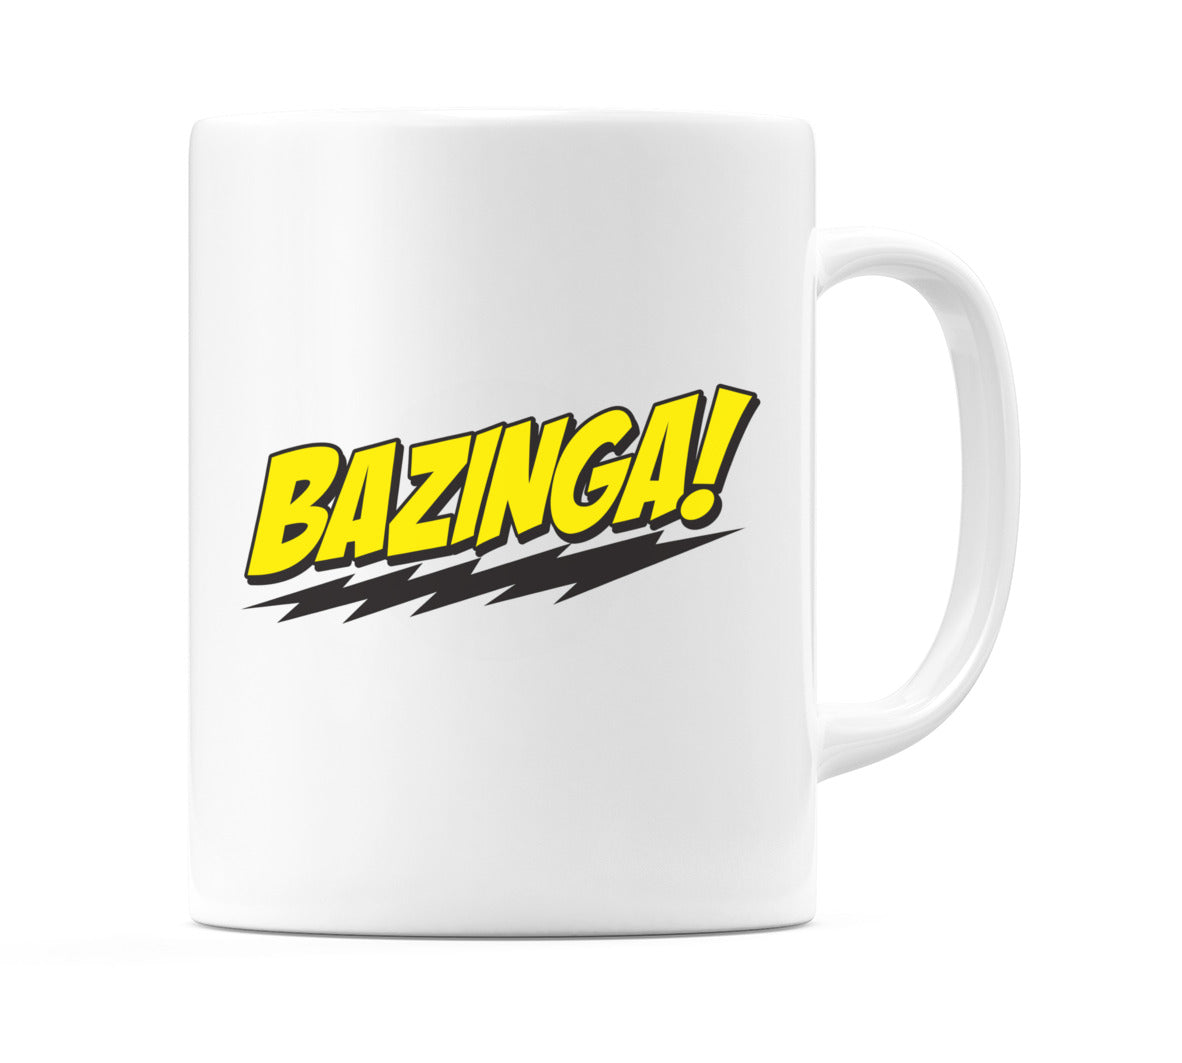 The Big Bang Theory - BAZINGA Mug